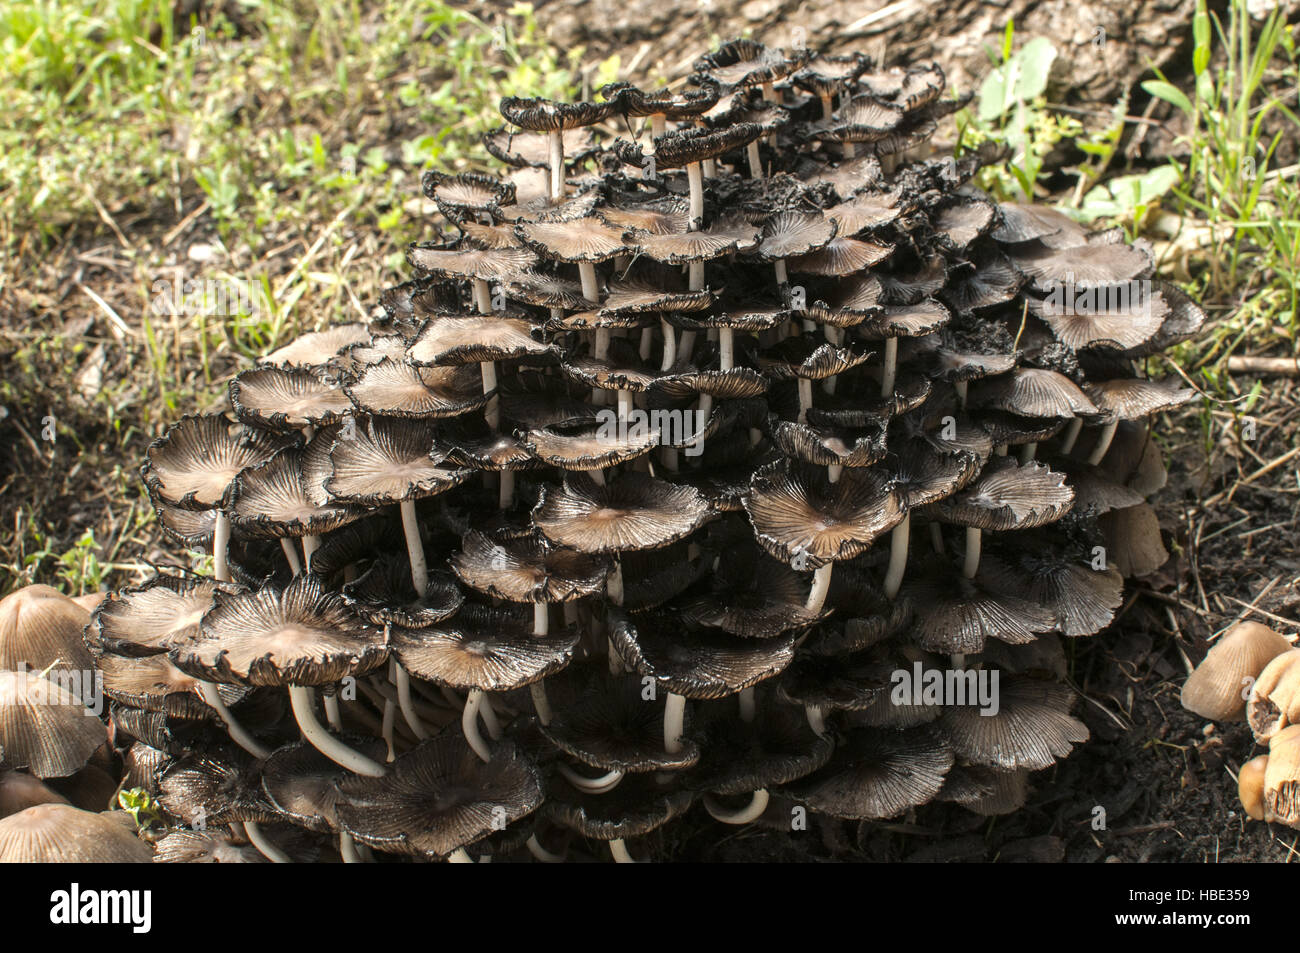 Wood mushroom fungi clusters Stock Photo